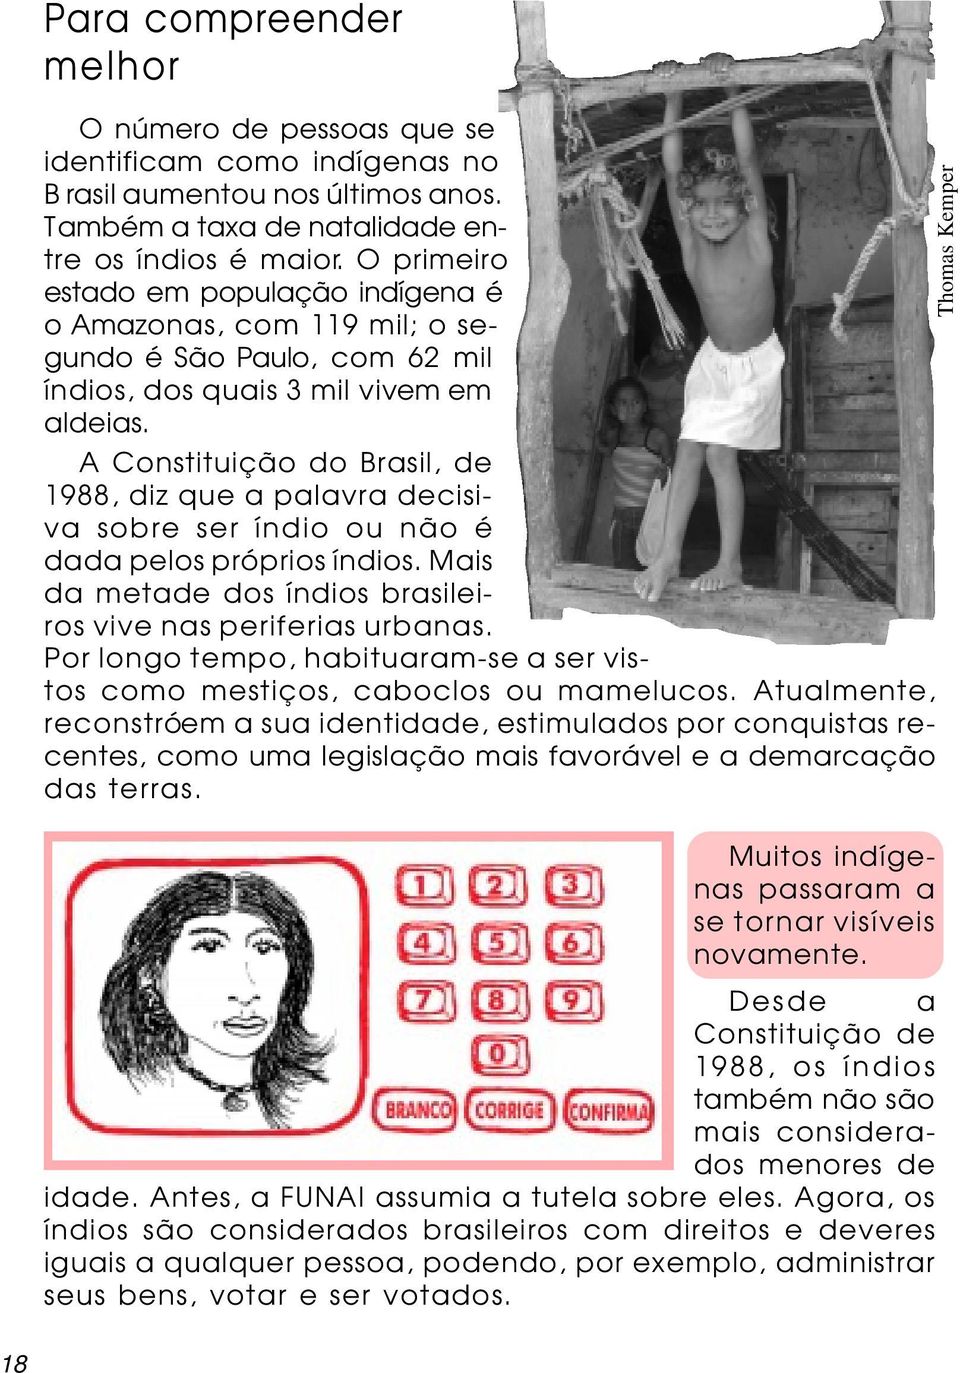 A Constituição do Brasil, de 1988, diz que a palavra decisiva sobre ser índio ou não é dada pelos próprios índios. Mais da metade dos índios brasileiros vive nas periferias urbanas.